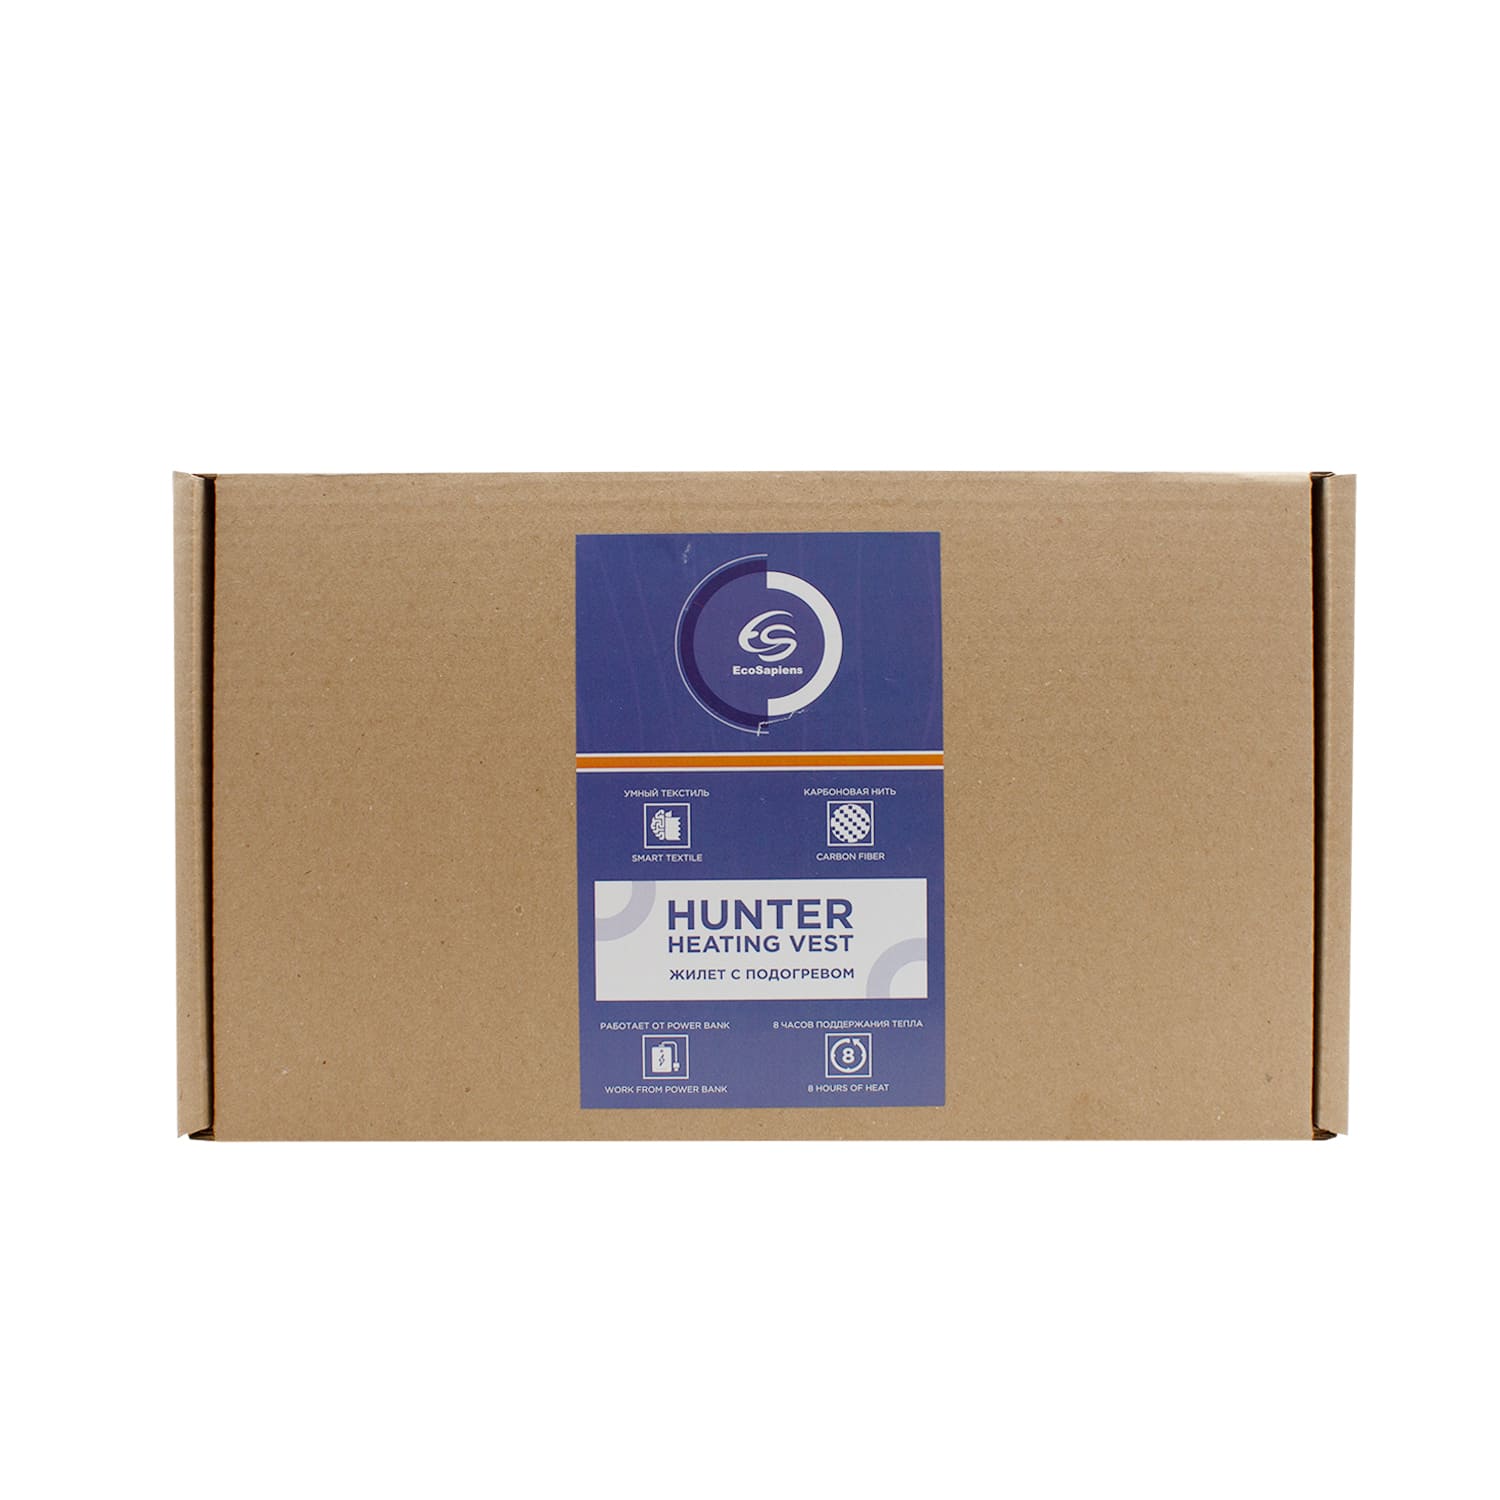 Hunter-S316-box2.jpg